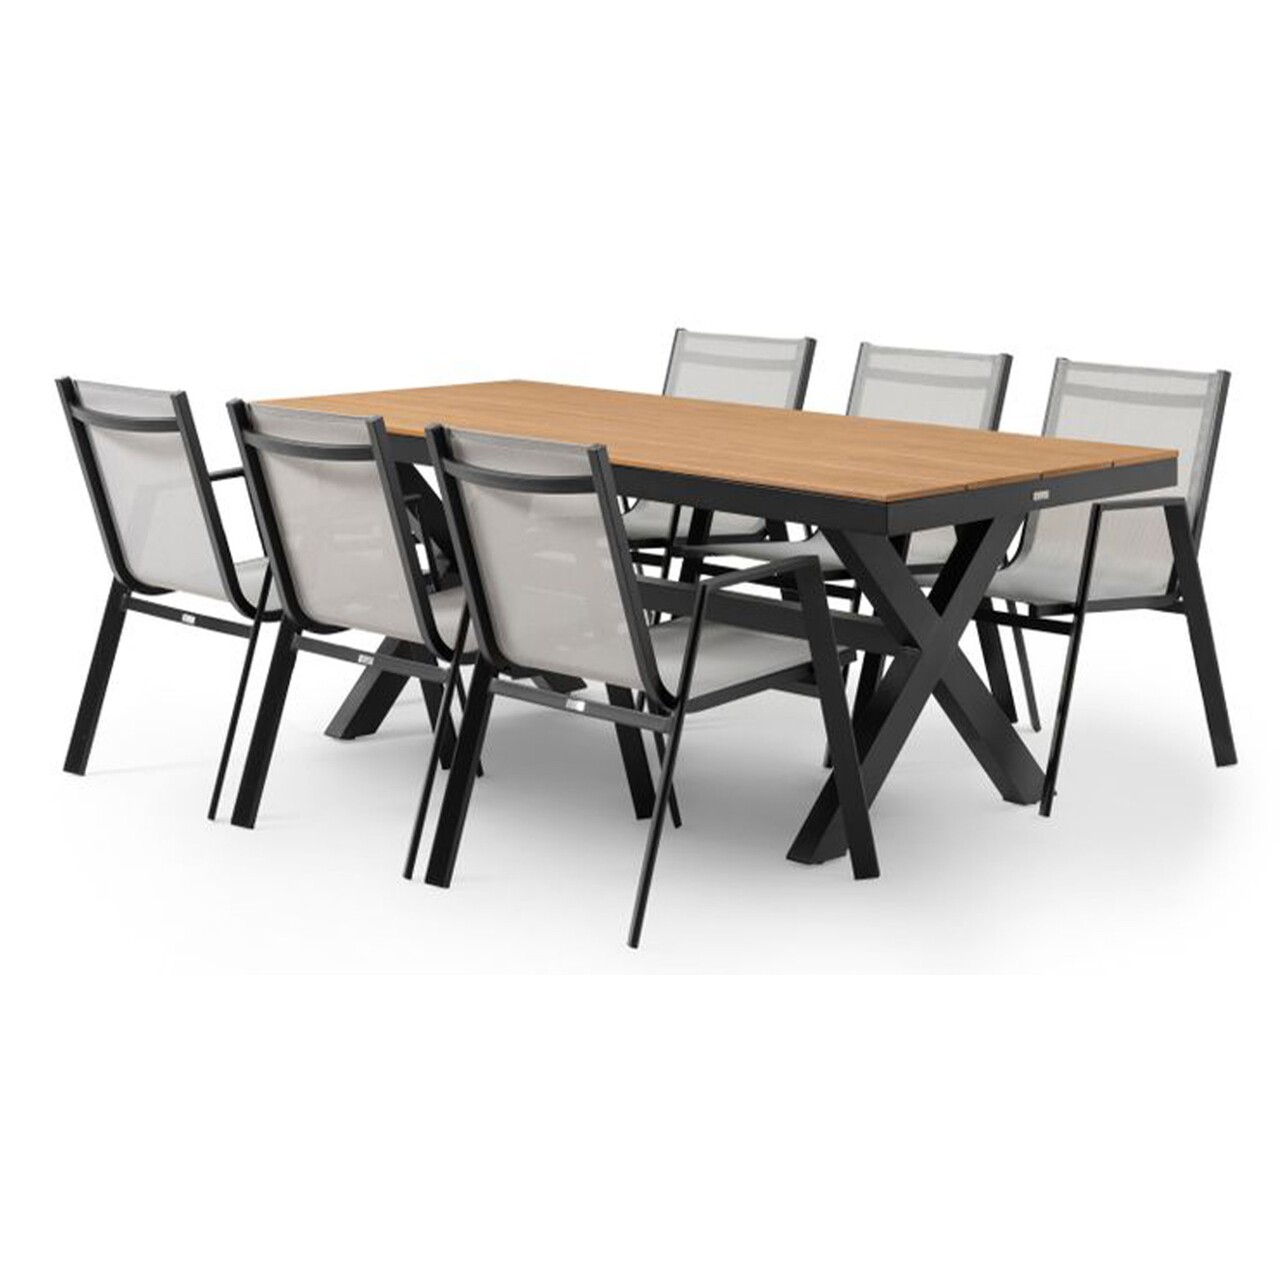 Maison bahia/baria asztal 6 db székkel, alumínnium, fekete/természetes/szürke